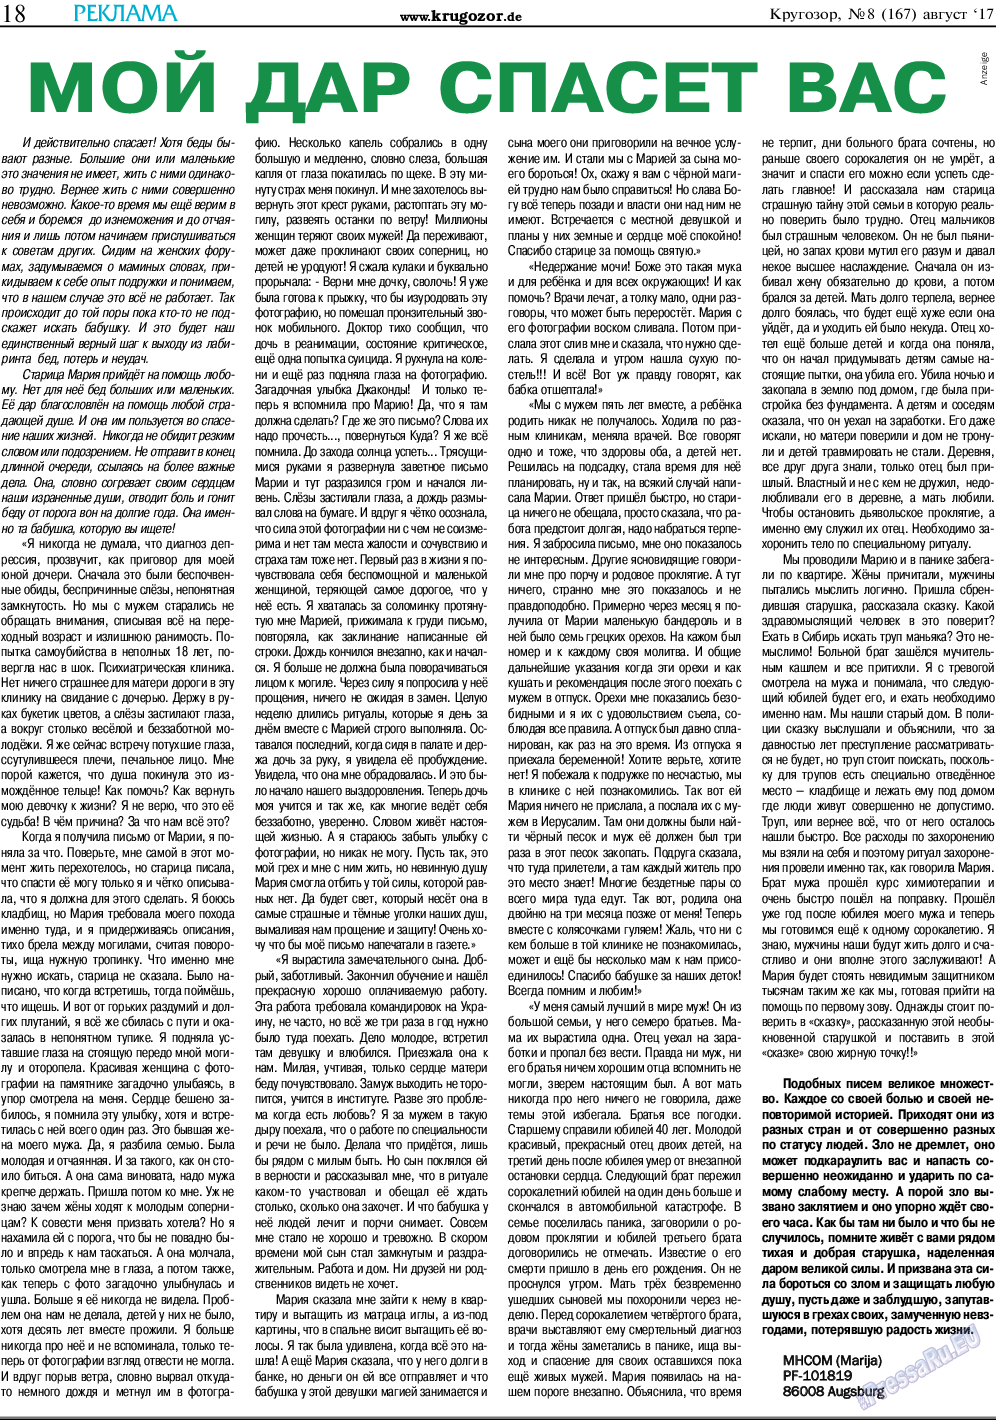 Кругозор, газета. 2017 №8 стр.18